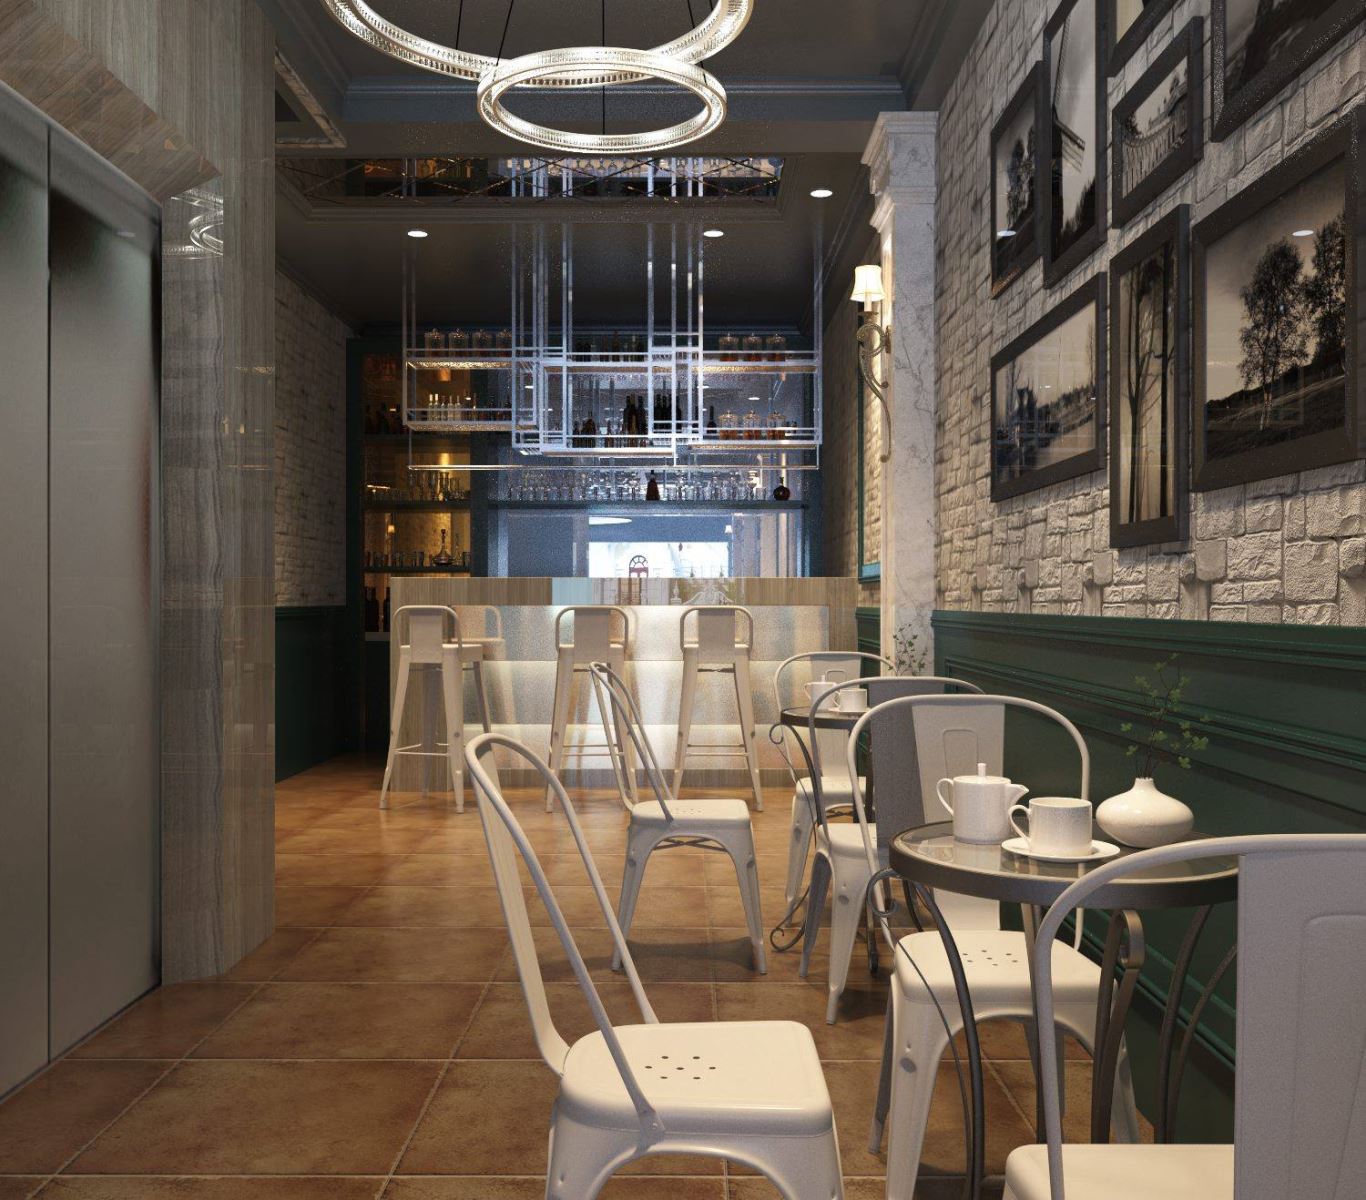 Chia sẻ cách lựa chọn bàn ghế phù hợp cho không gian quán cafe